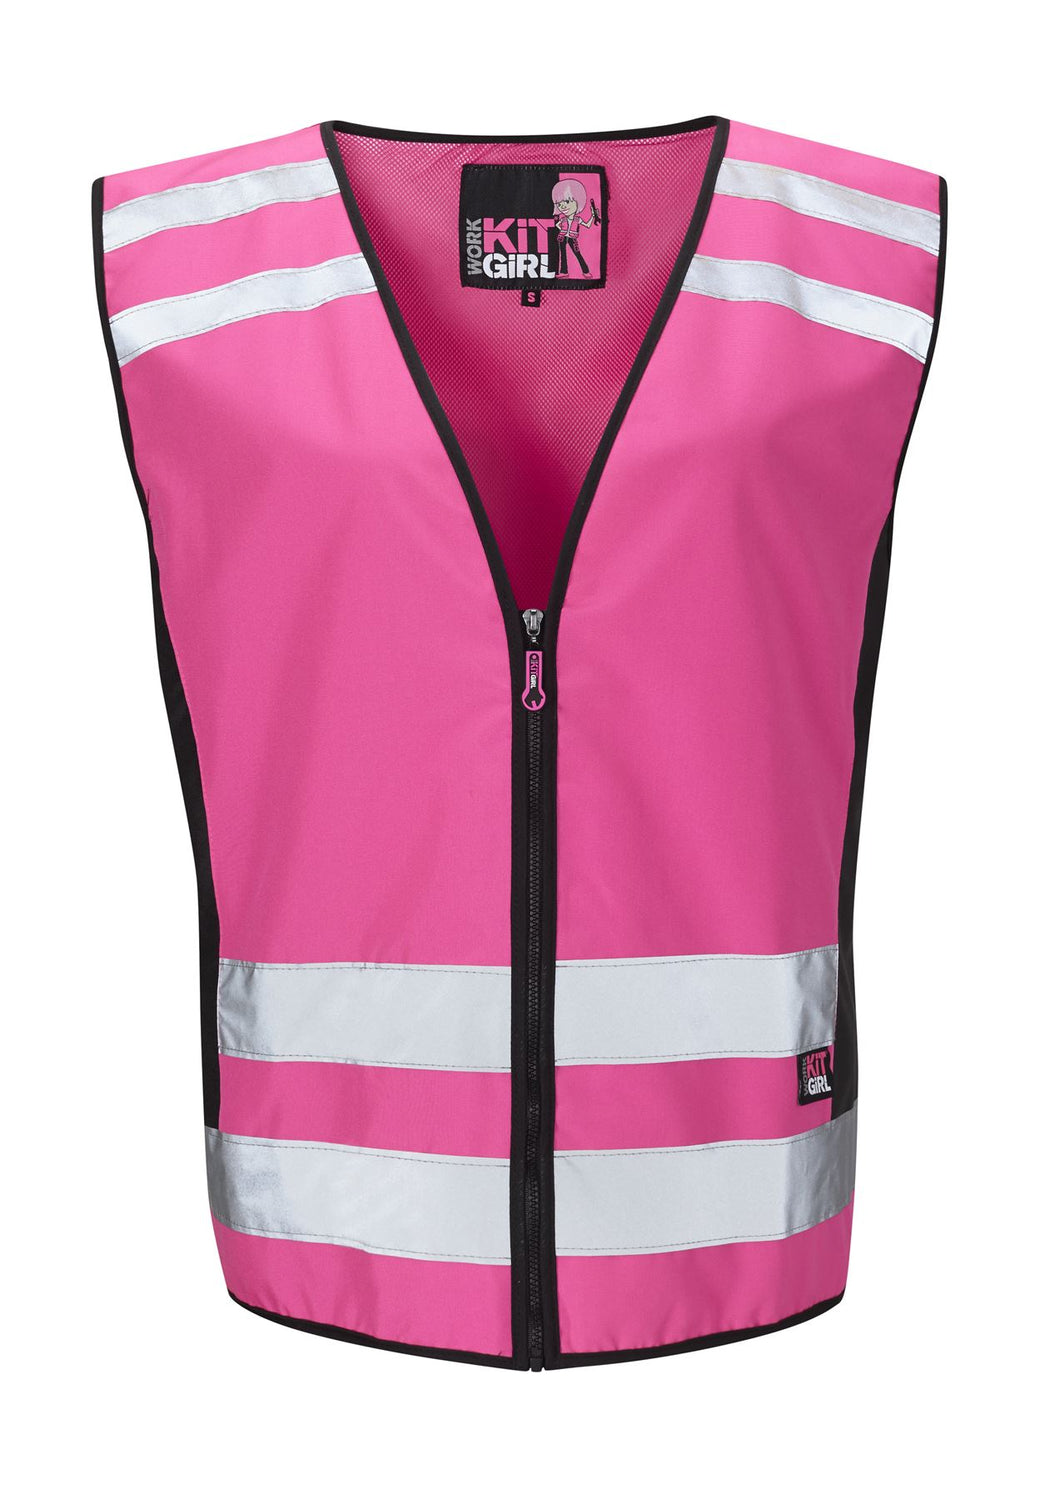 Womens See Me Hi Vis Pink Waistcoat/Vest - Pink - Work Kit Girl